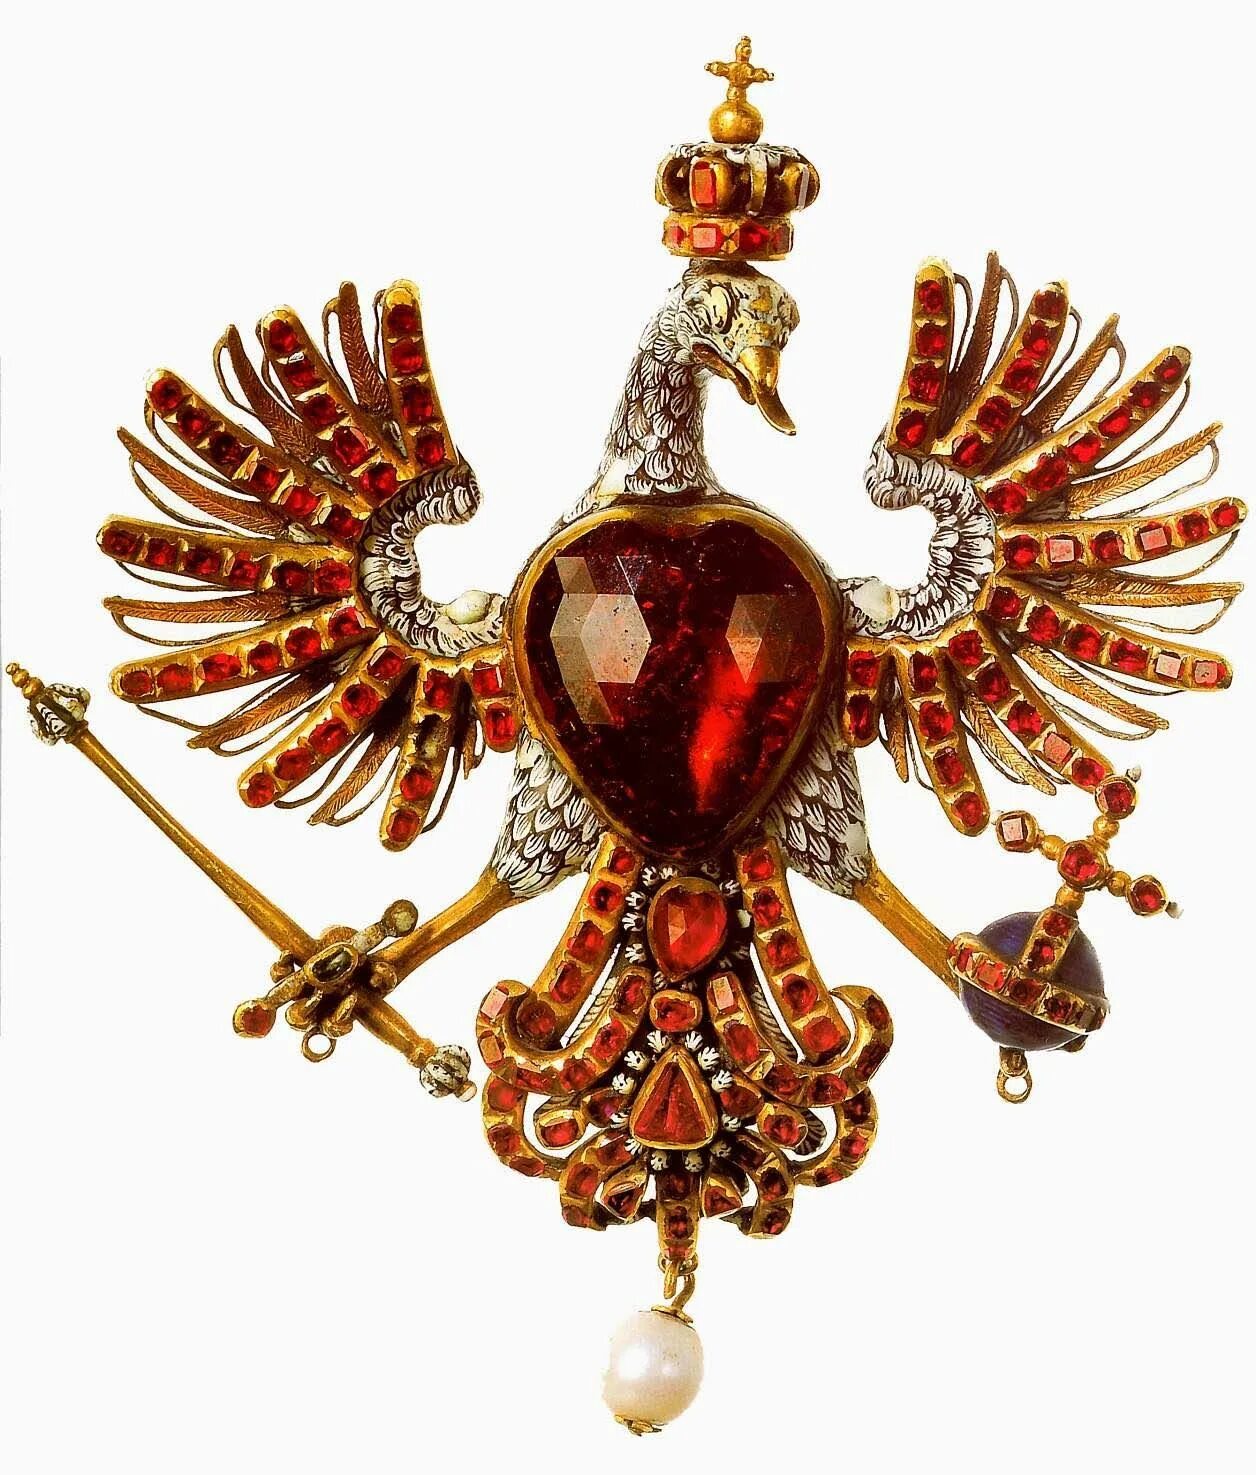 Заколка польский Орел 17 - 18 век золото, Жемчужина, рубины; эмаль. Королевская корона Испании Королевские регалии. Ювелирные украшения 18 века.